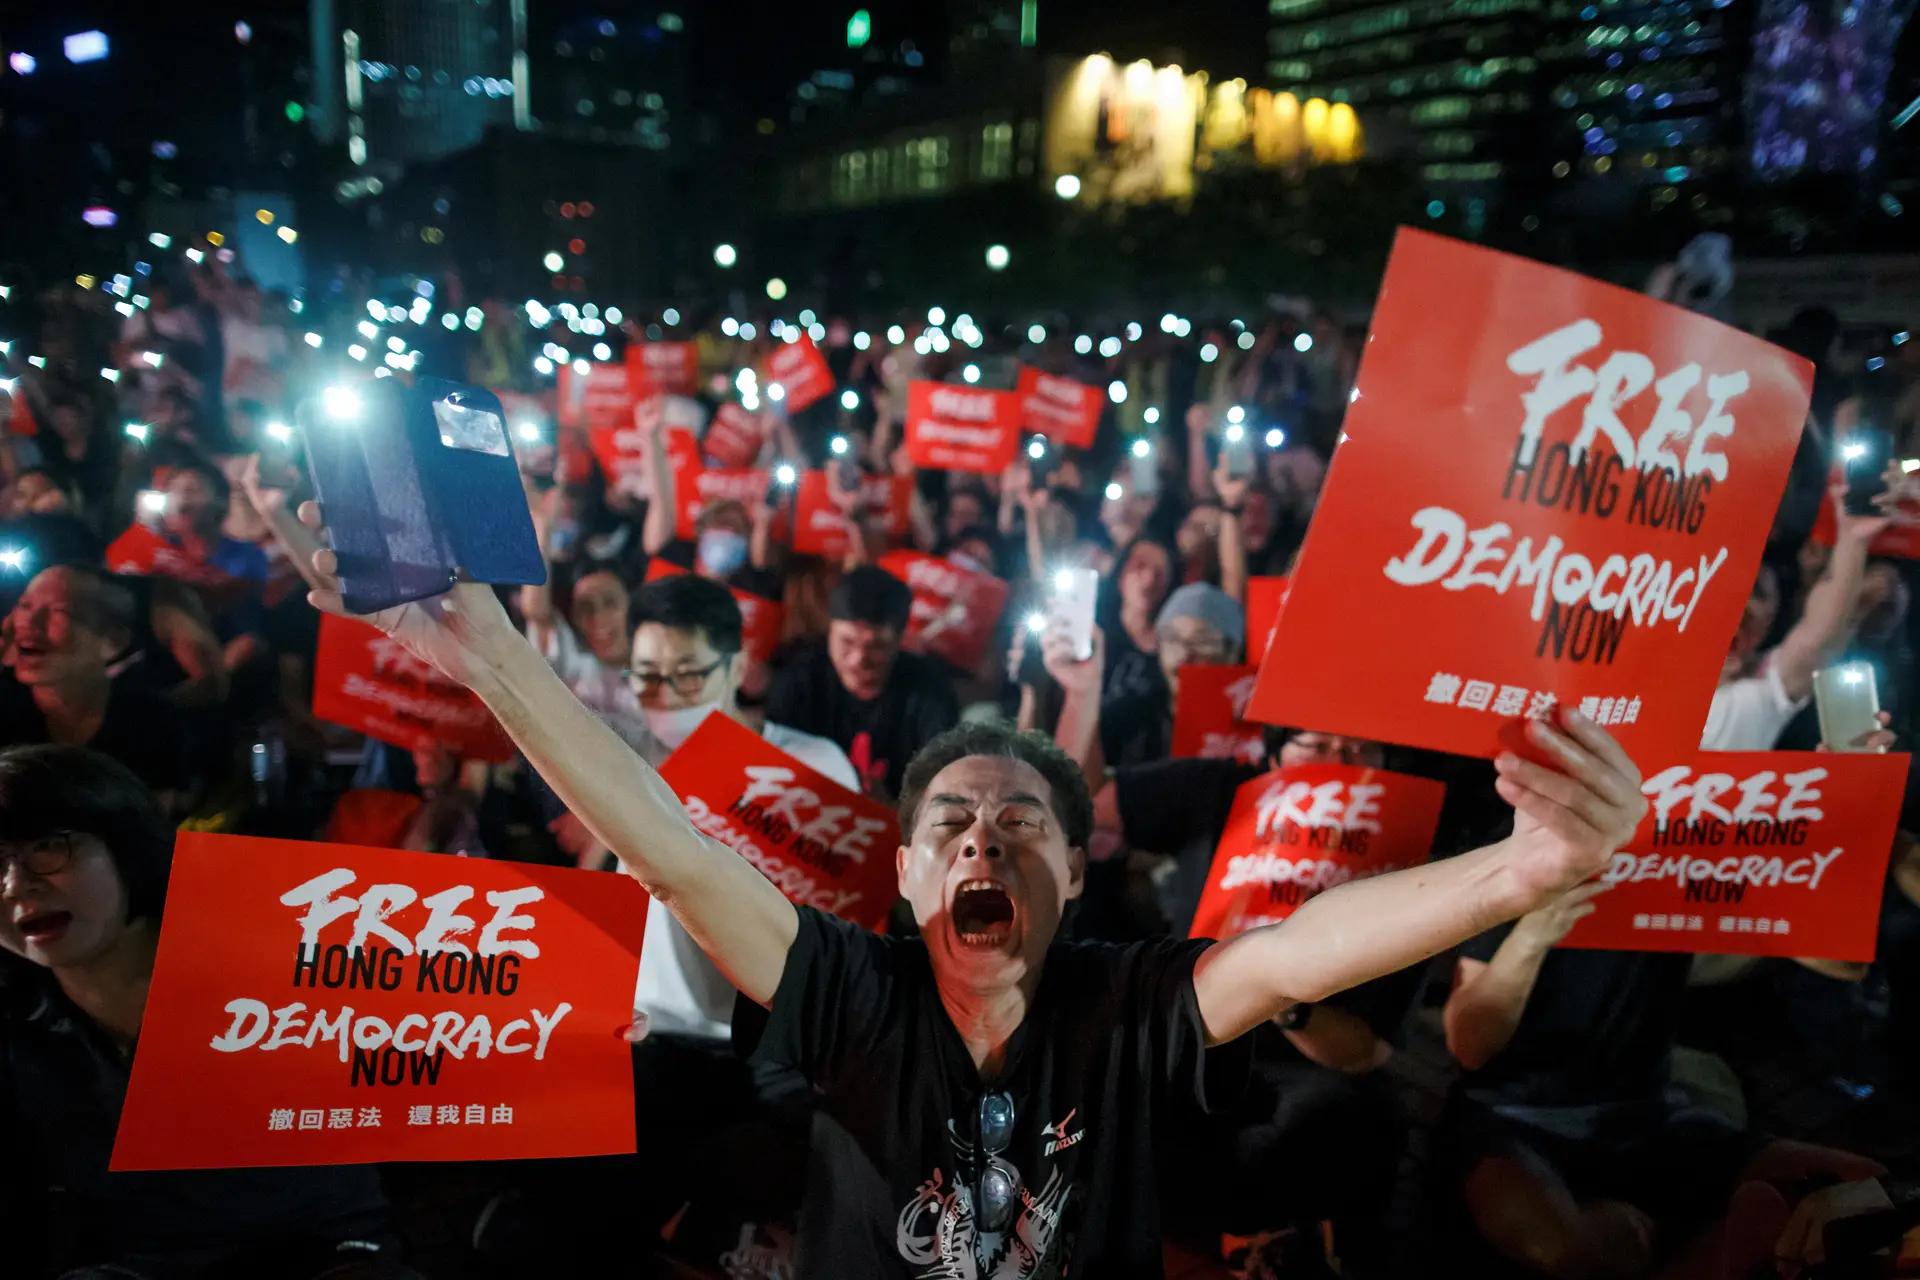 CARTAZ. “Hong Kong livre. Democracia agora”, é apenas um exemplo